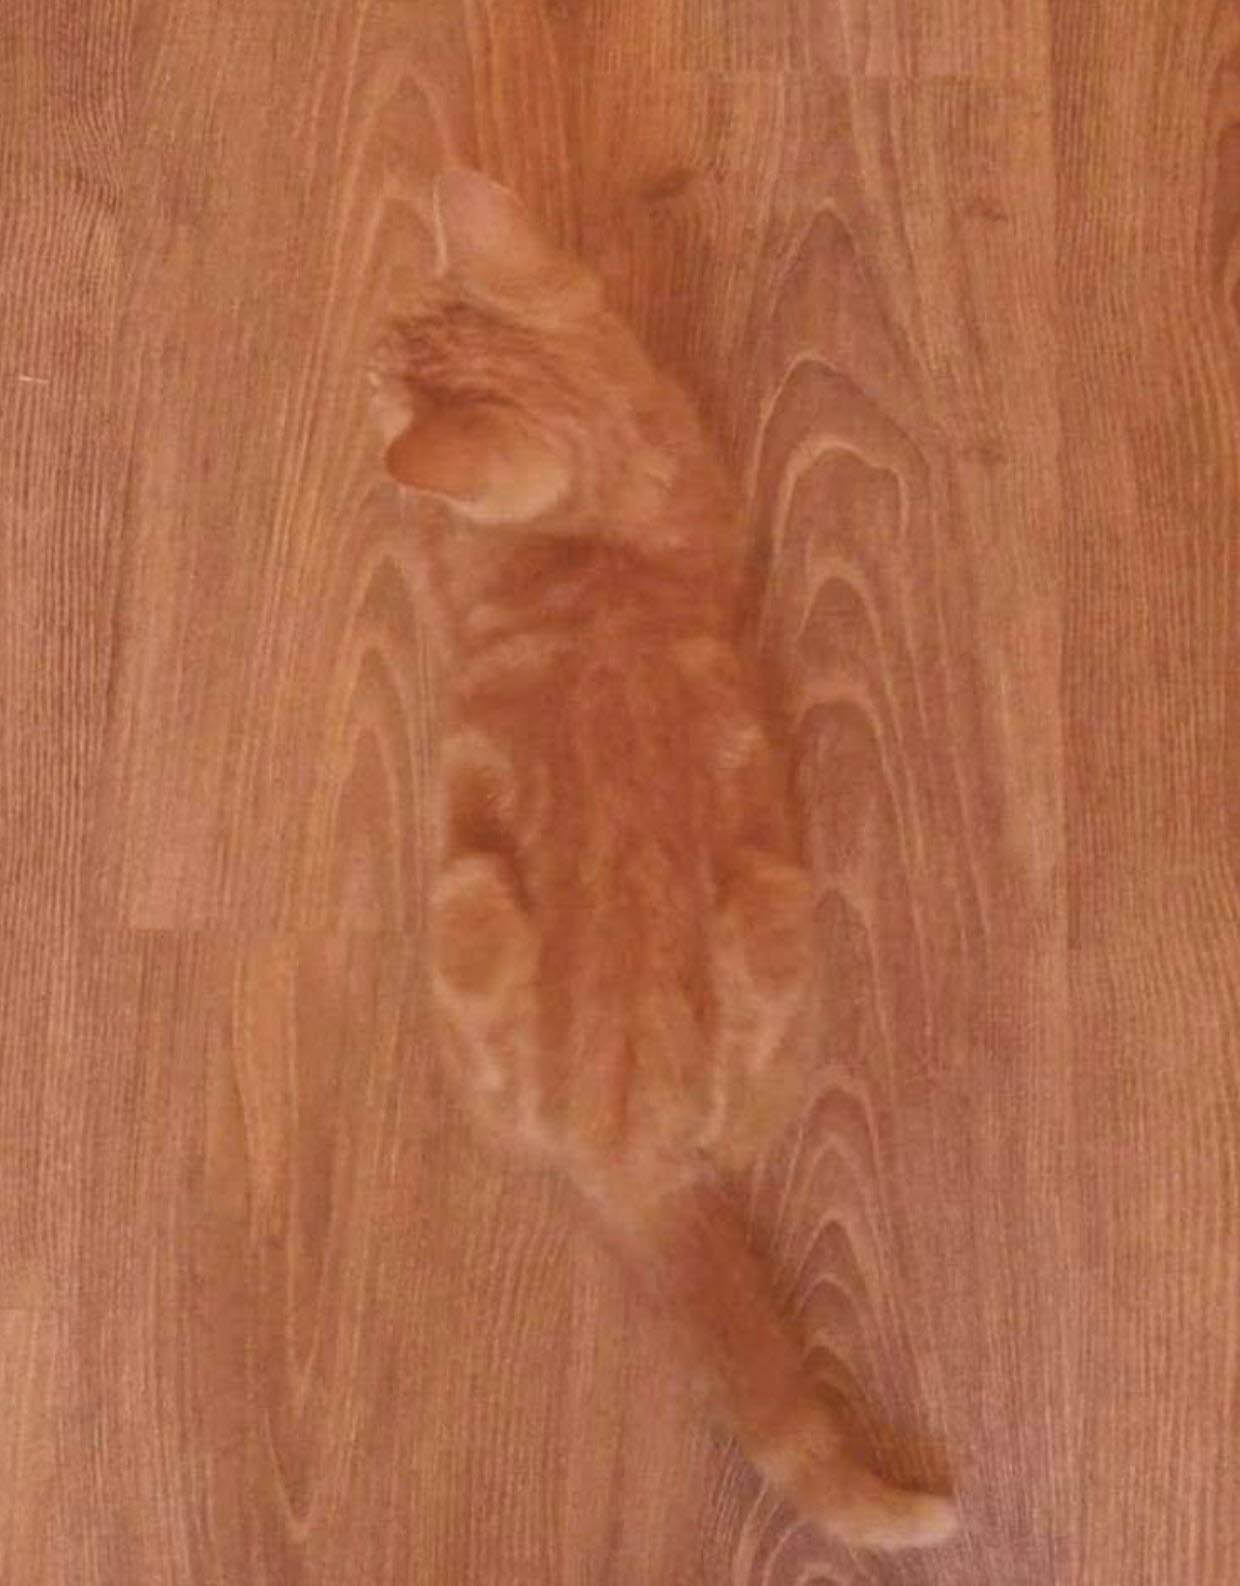 Diese Katze liegt verloren auf einem Holzboden